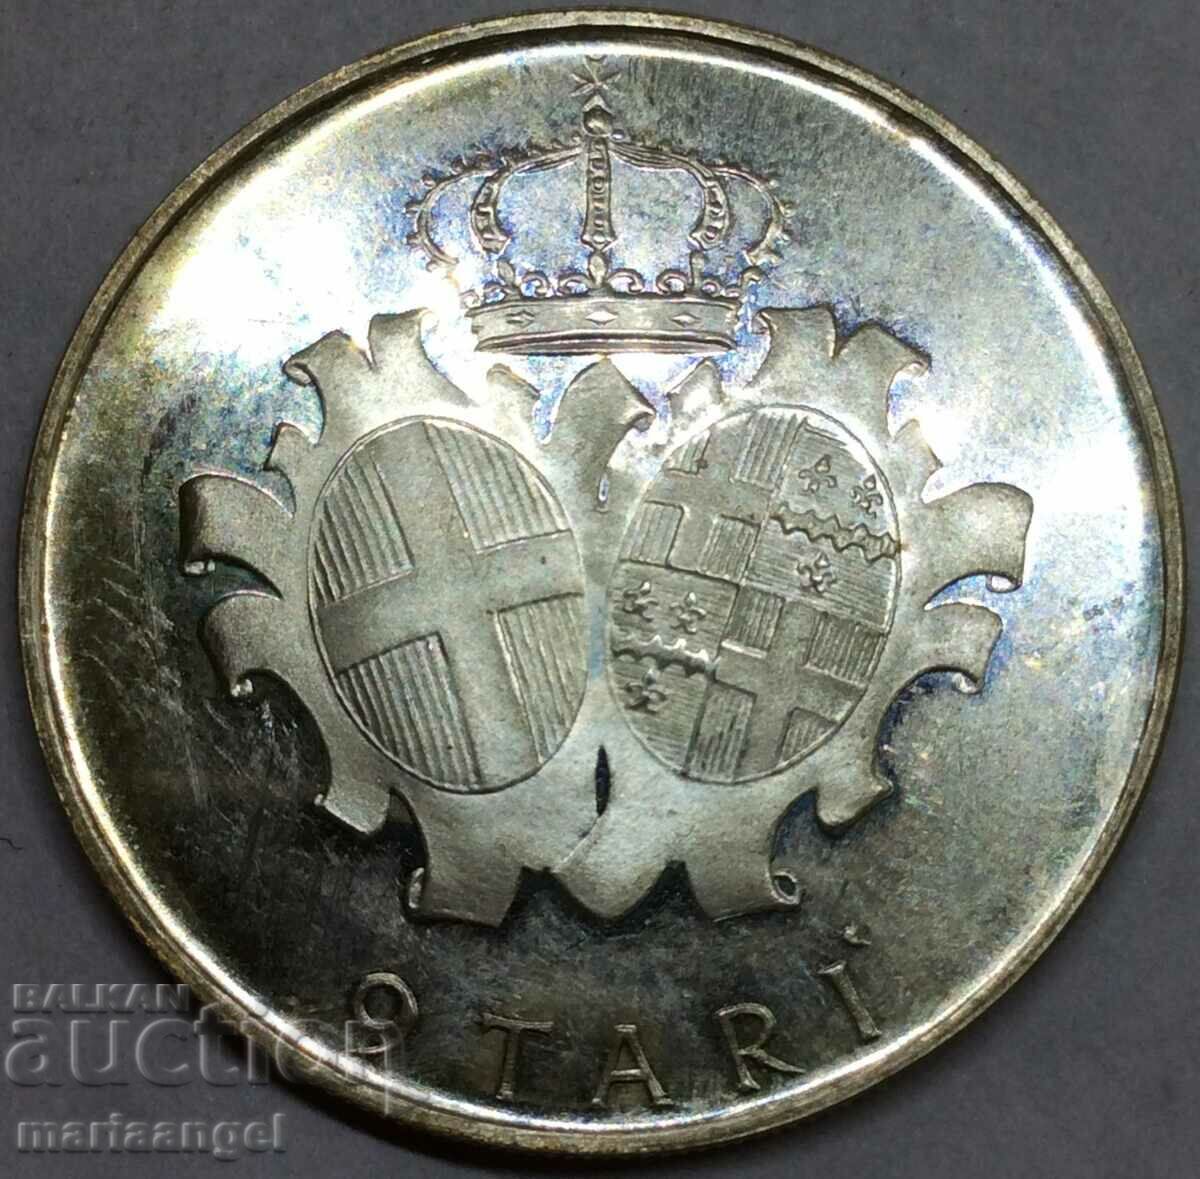 Malta 9 Tare 1972 PROOF UNC ORDER OF COAT OF ARMS - rare silver